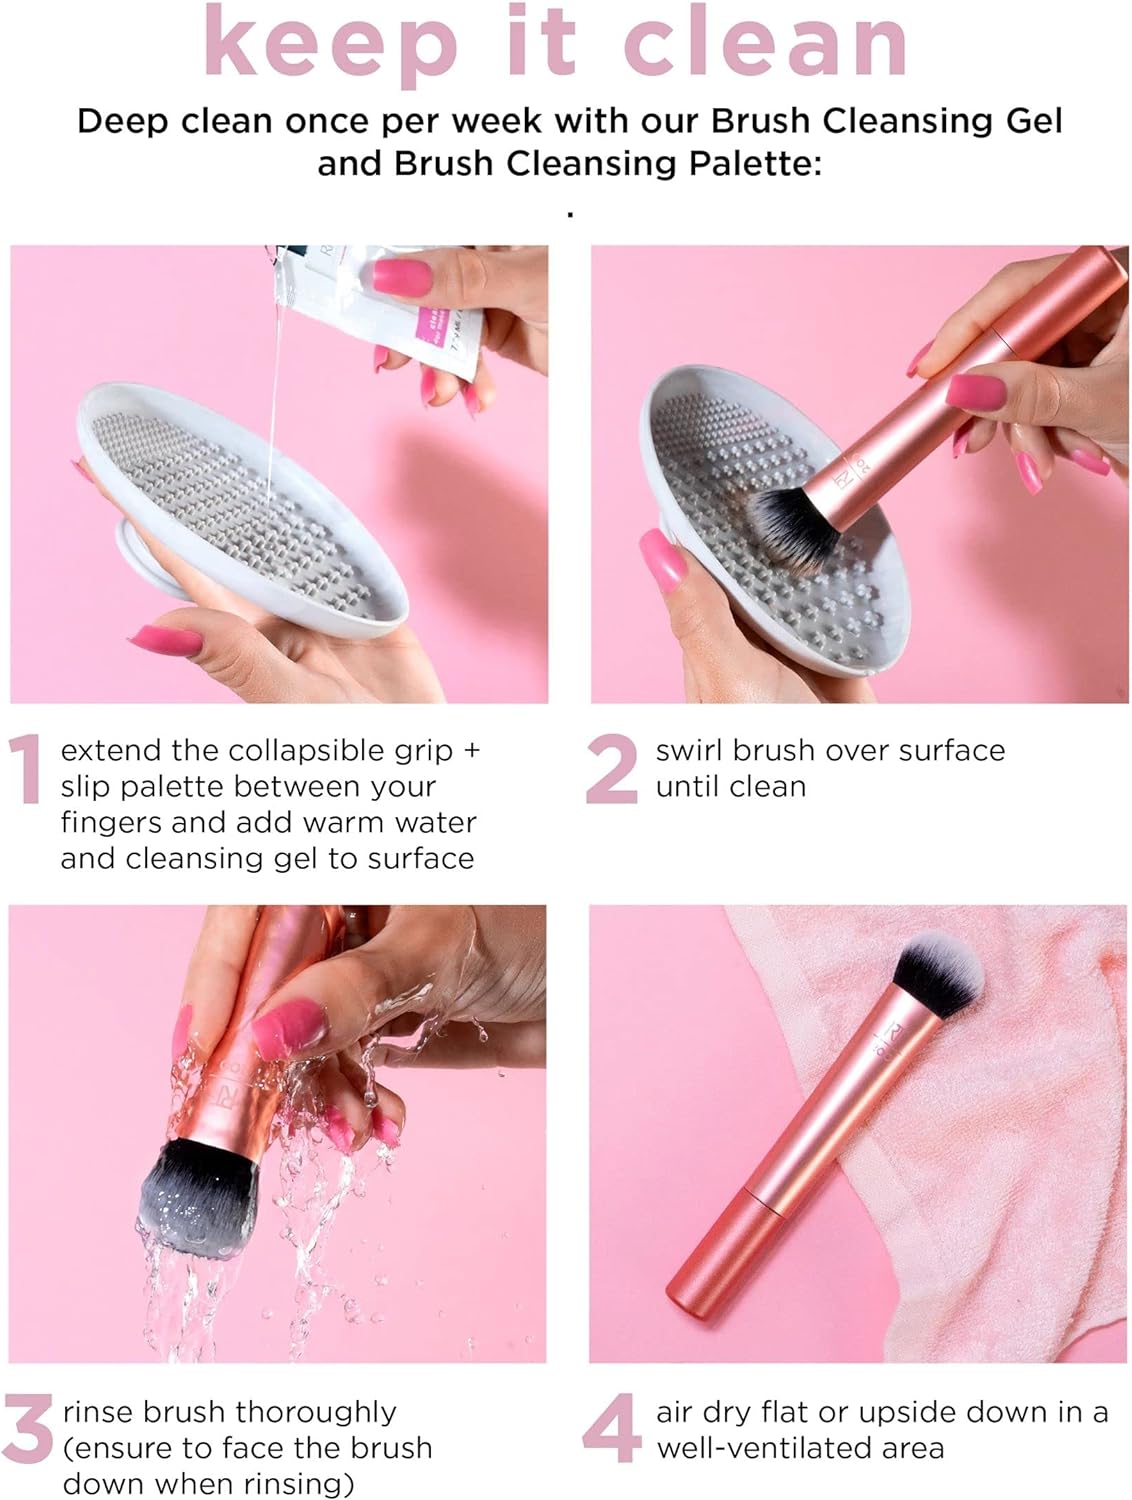 Real Techniques Face Base Makeup Brush Kit, 5 Piece Set